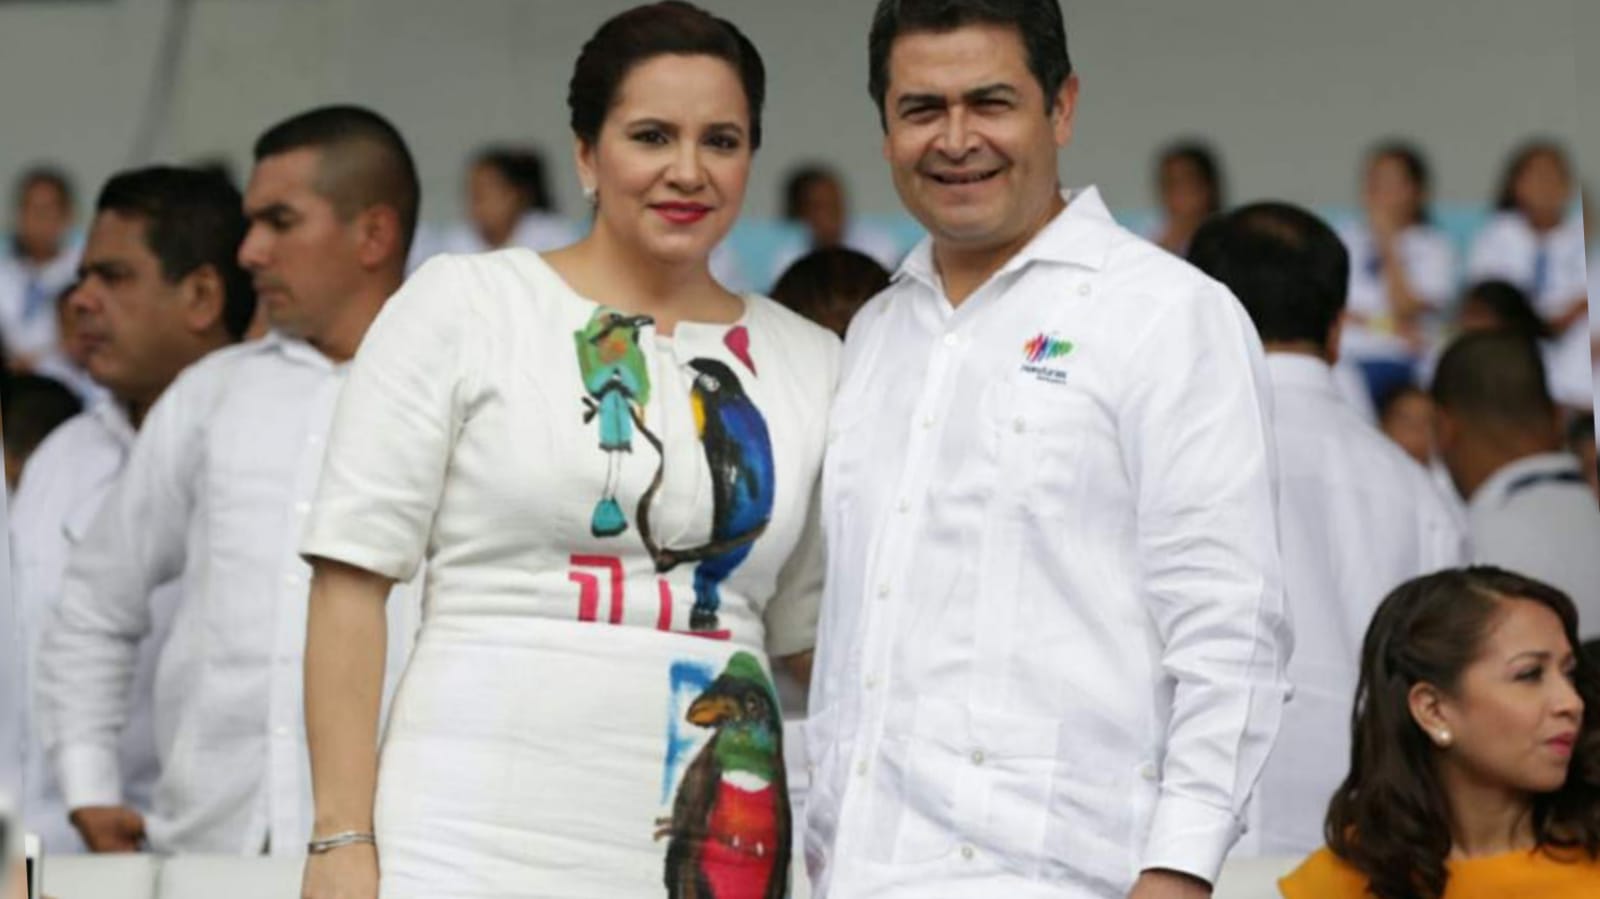 JOH y Ana García